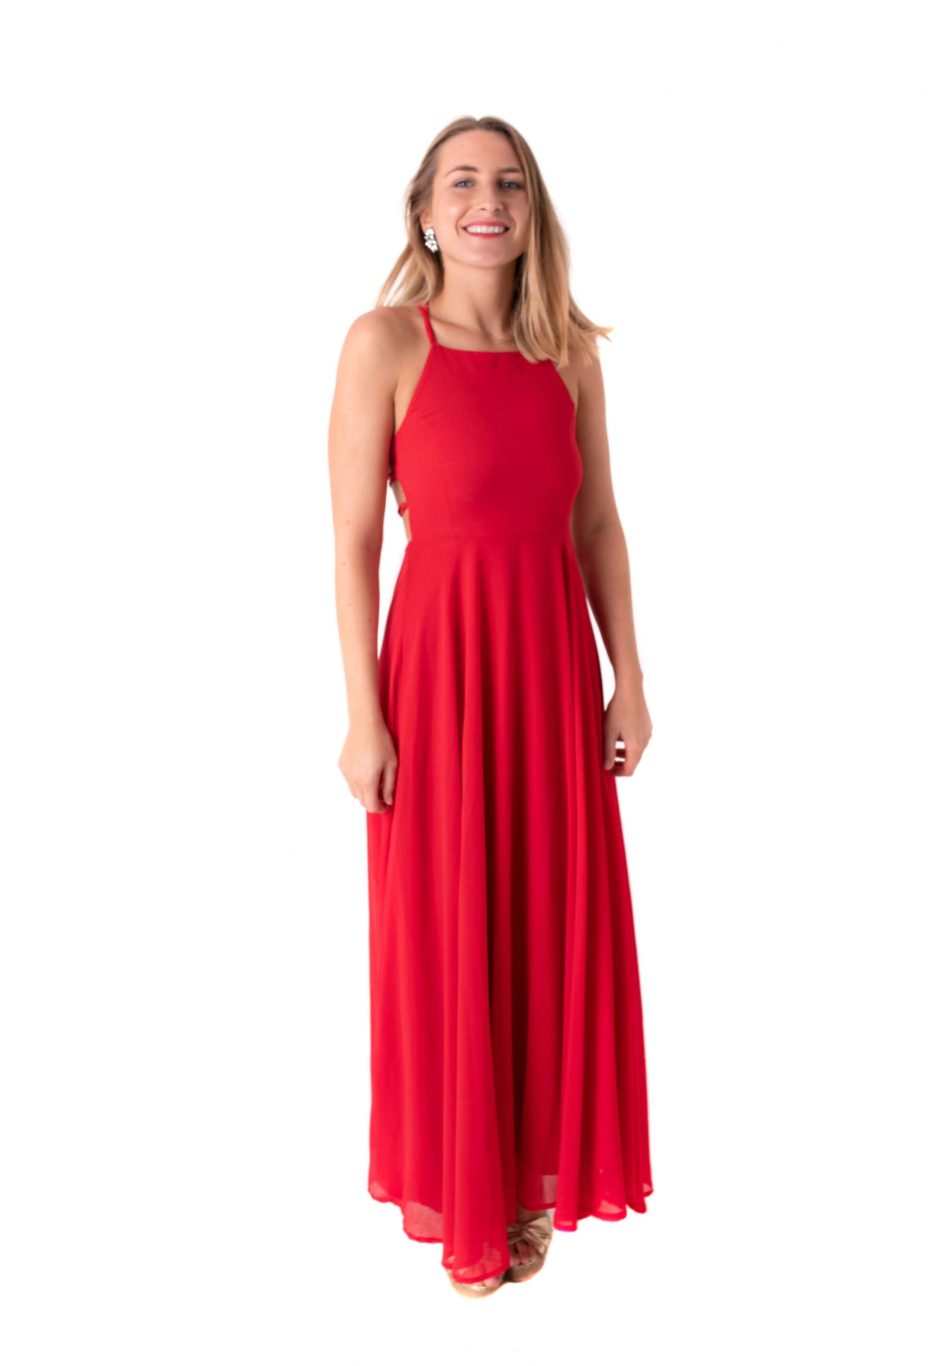 Vestido rojo cuello espalda con cruzadas - Chic Dress Project